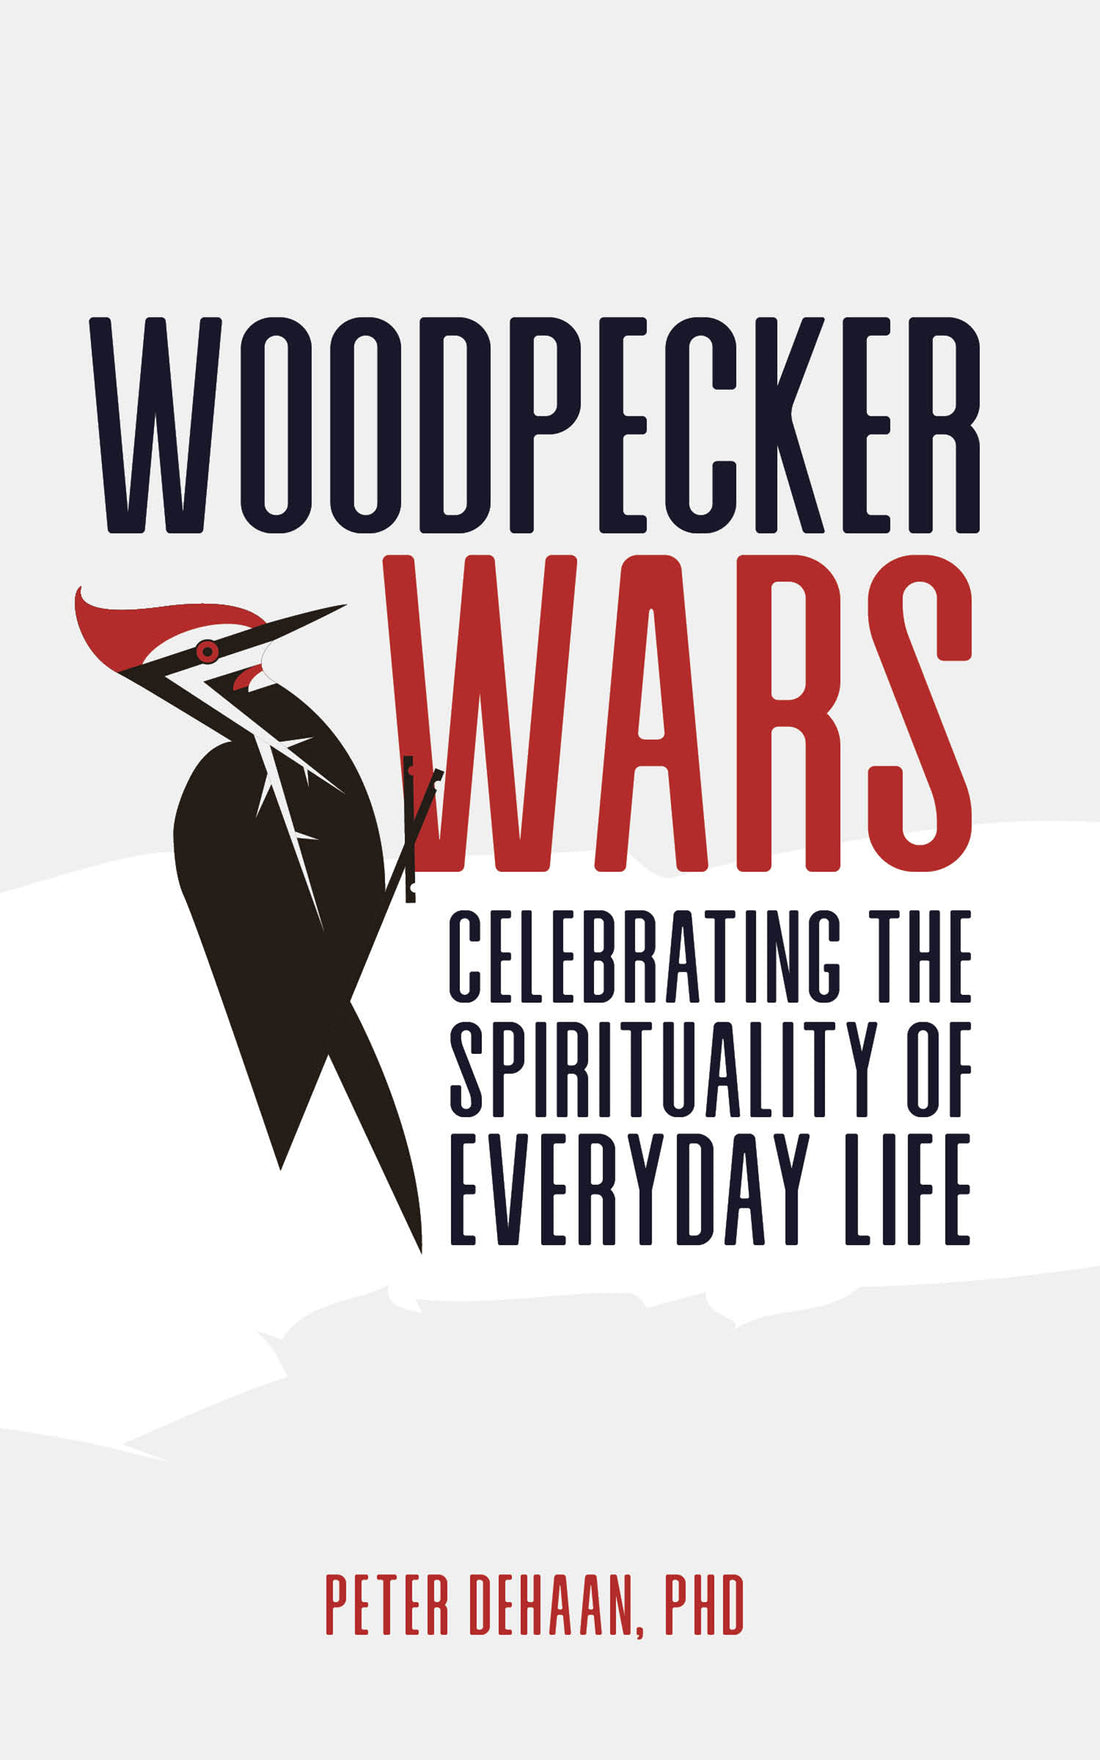 Woodpecker Wars, by Peter DeHaan